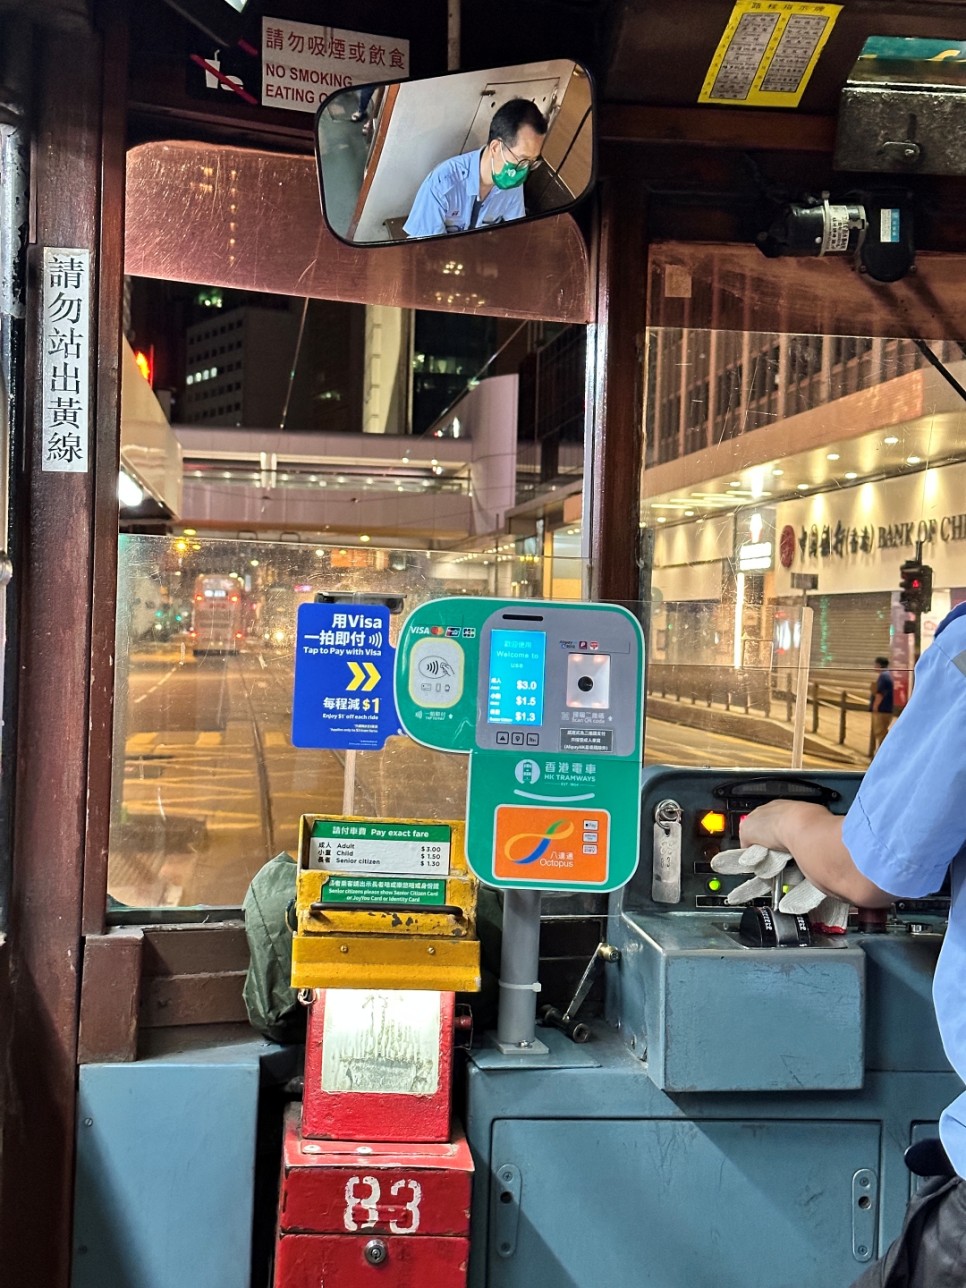 홍콩여행 준비물 옥토퍼스카드 구매 5% 할인 대중교통 편의점 이용 편리